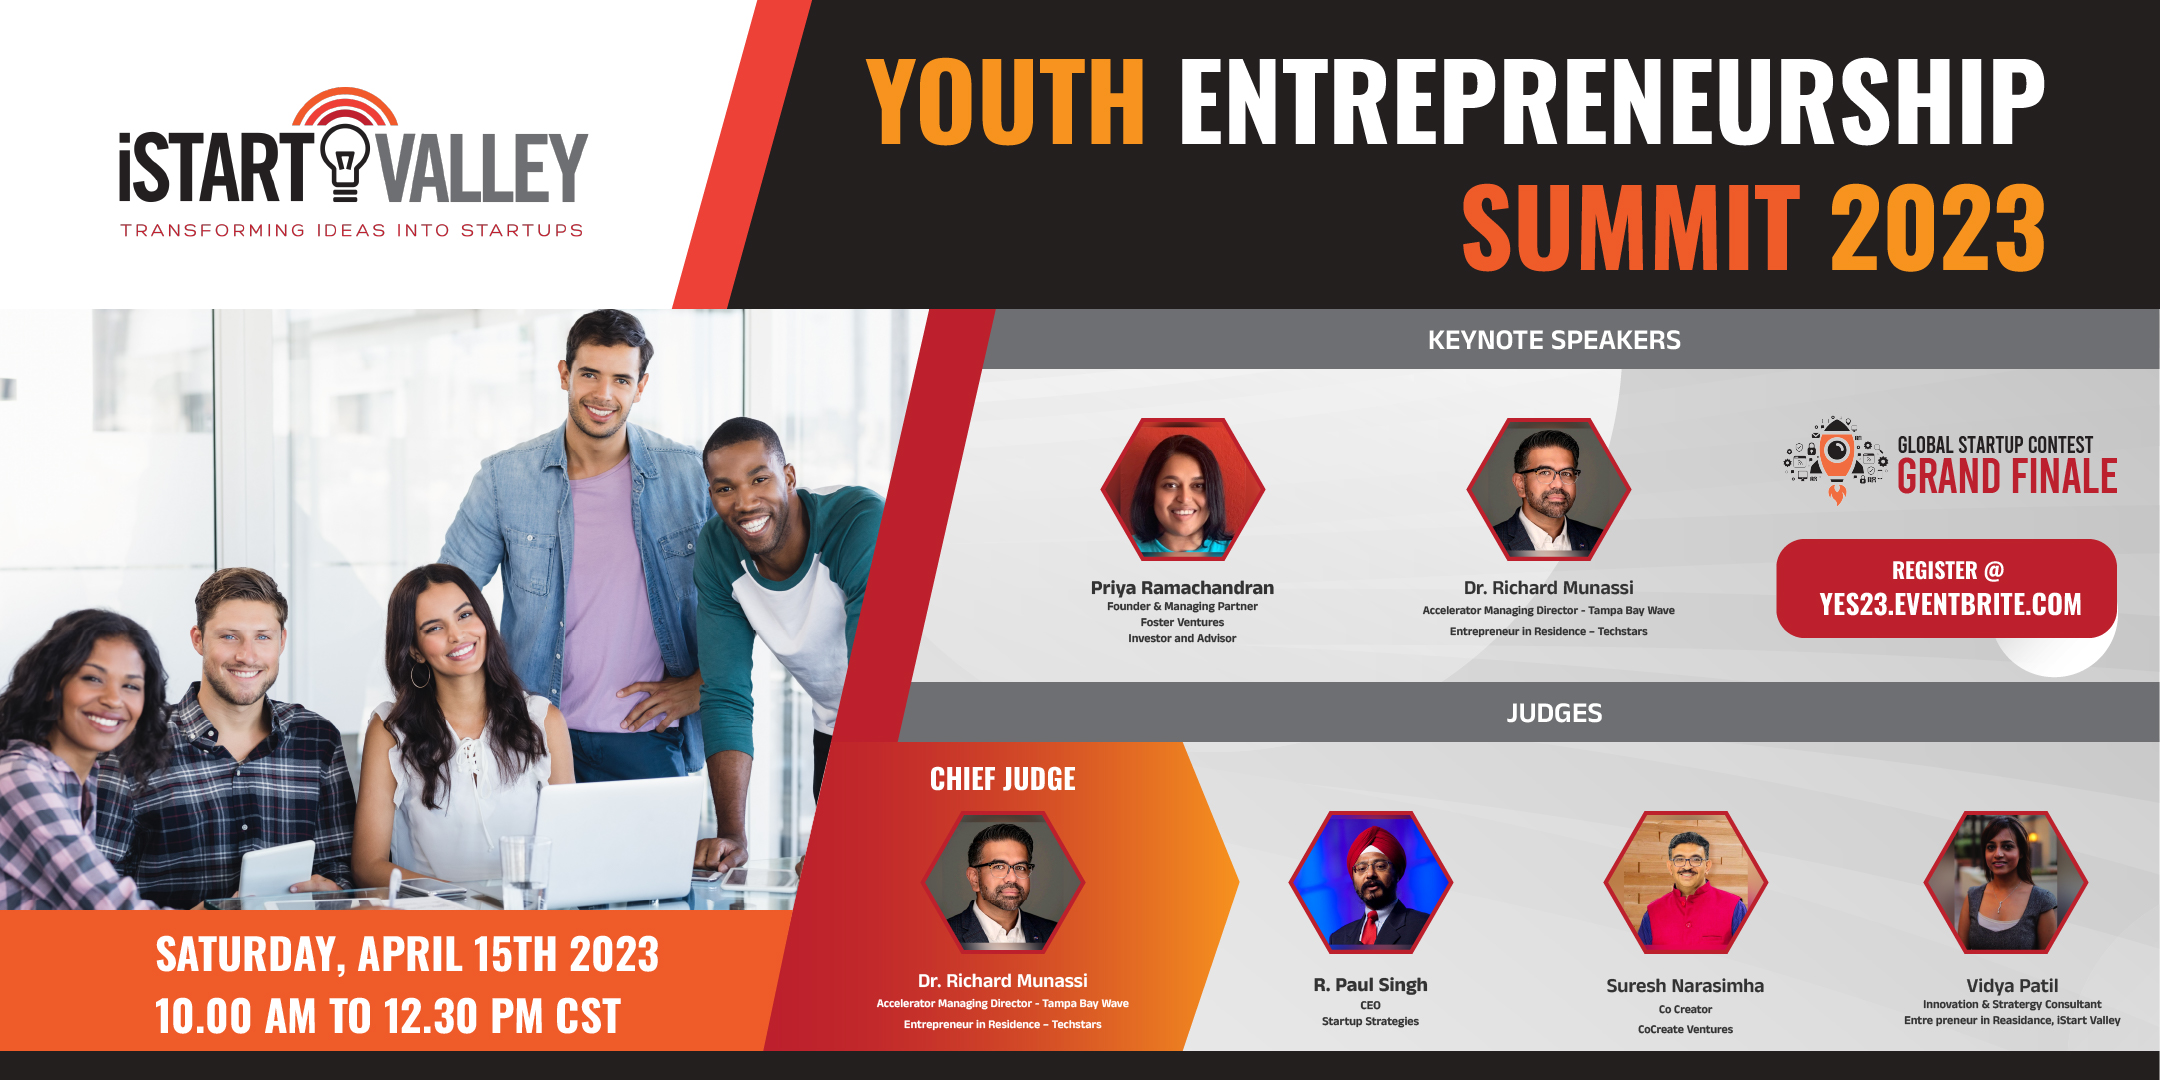 Youth Entrepreneurship Summit 2023